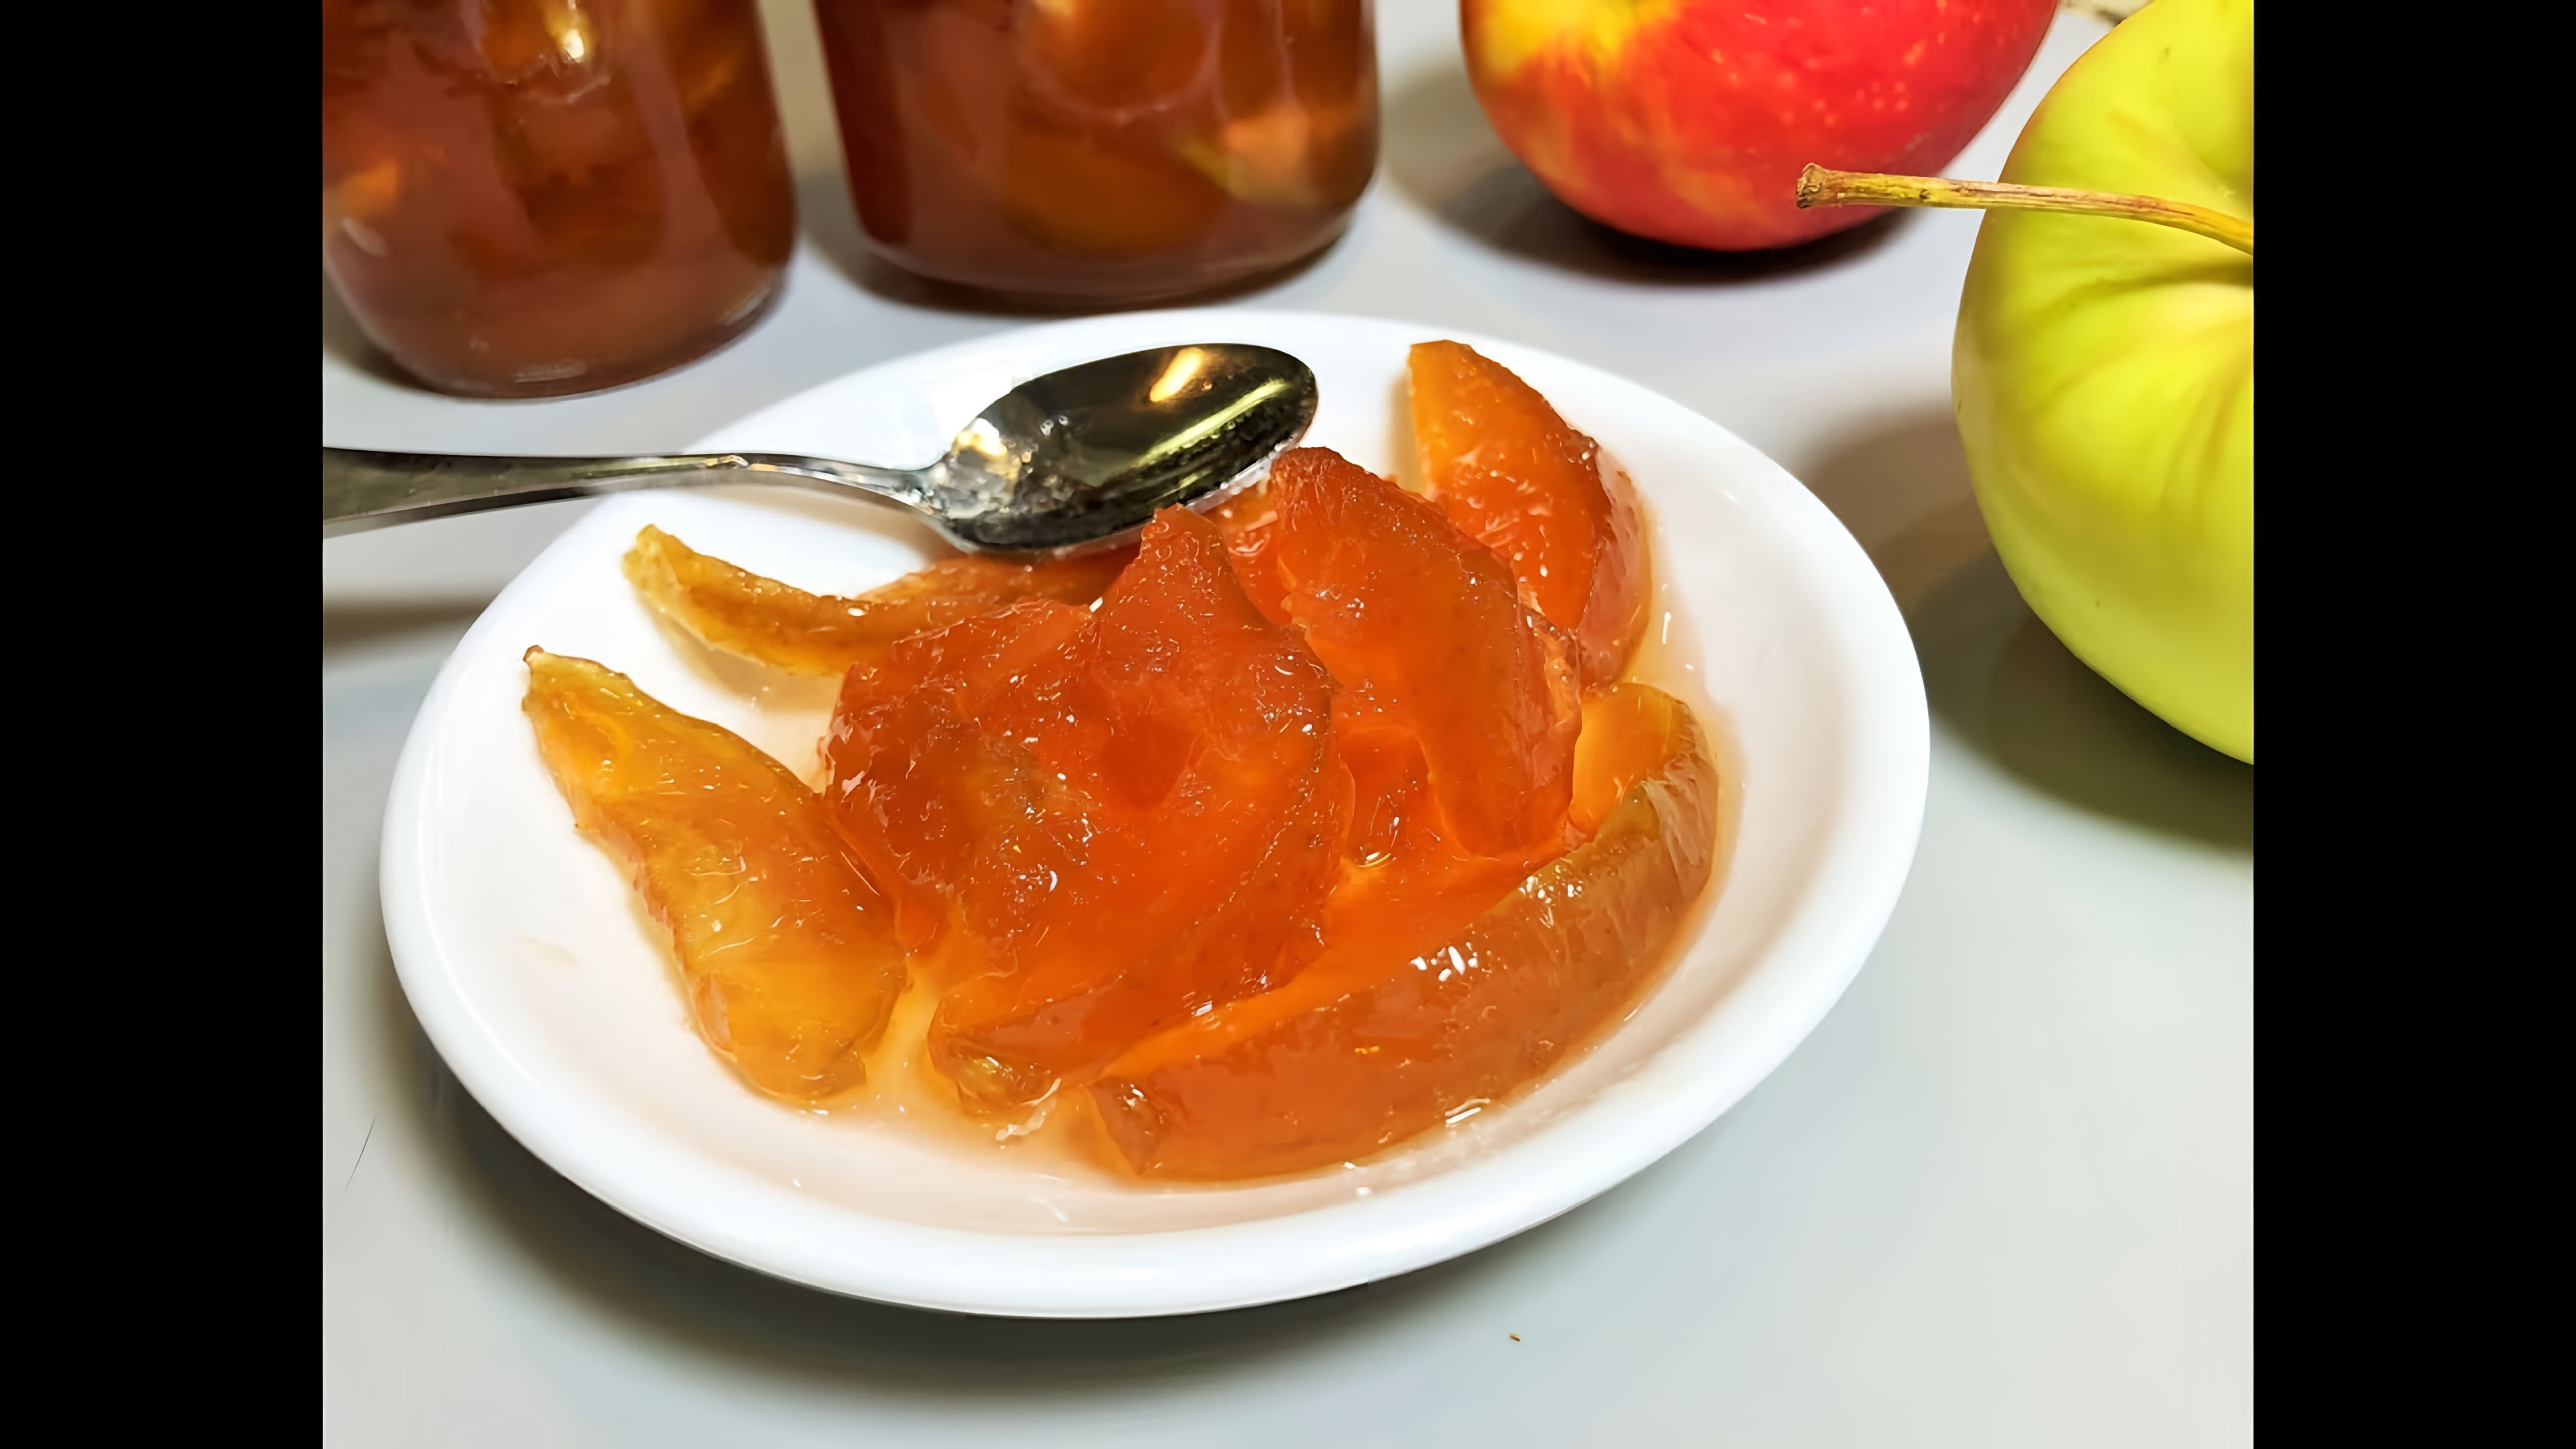 Яблочное варенье "Янтарные дольки" - это вкусное и ароматное лакомство, которое можно приготовить в домашних условиях